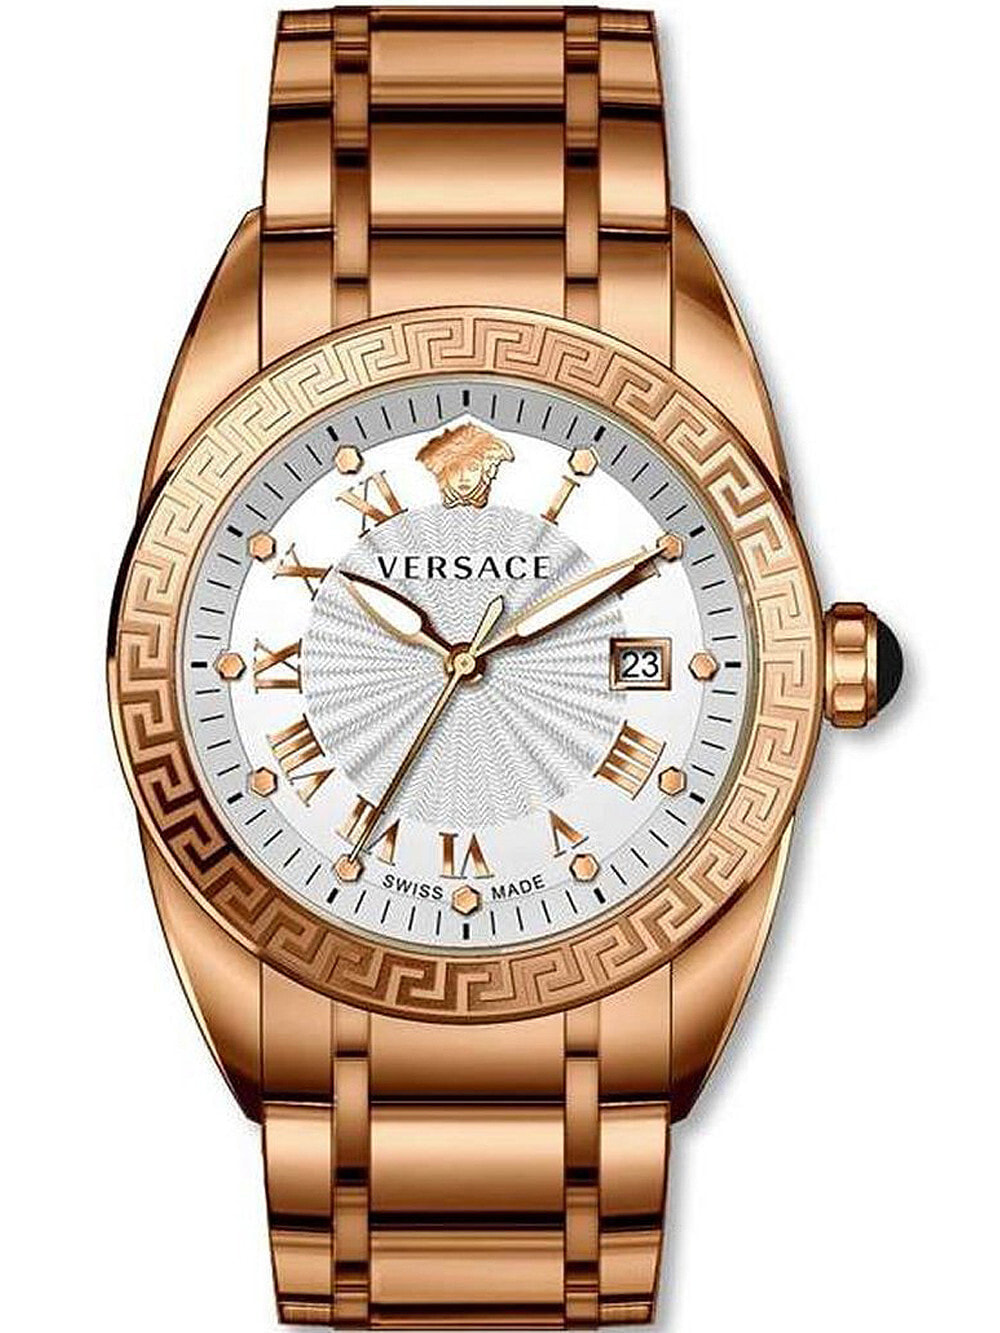 Мужские наручные часы с золотым браслетом Versace VFE090013 V-Sport II mens 42mm 5ATM